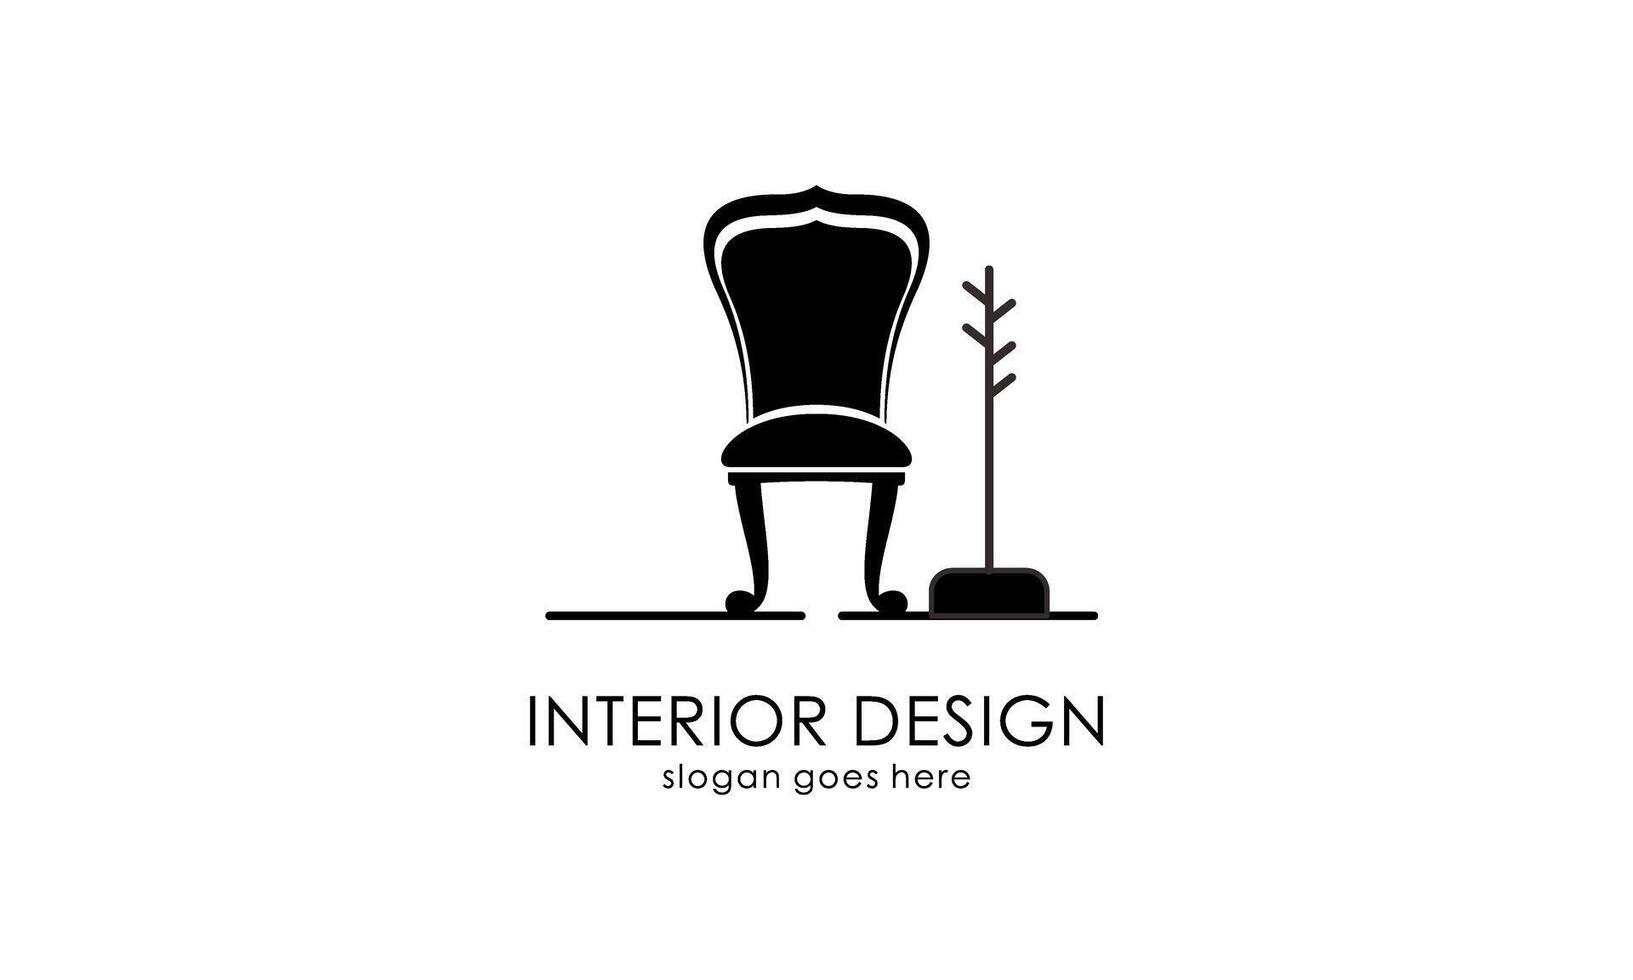 innenraum, möbelgalerie logo design vektor